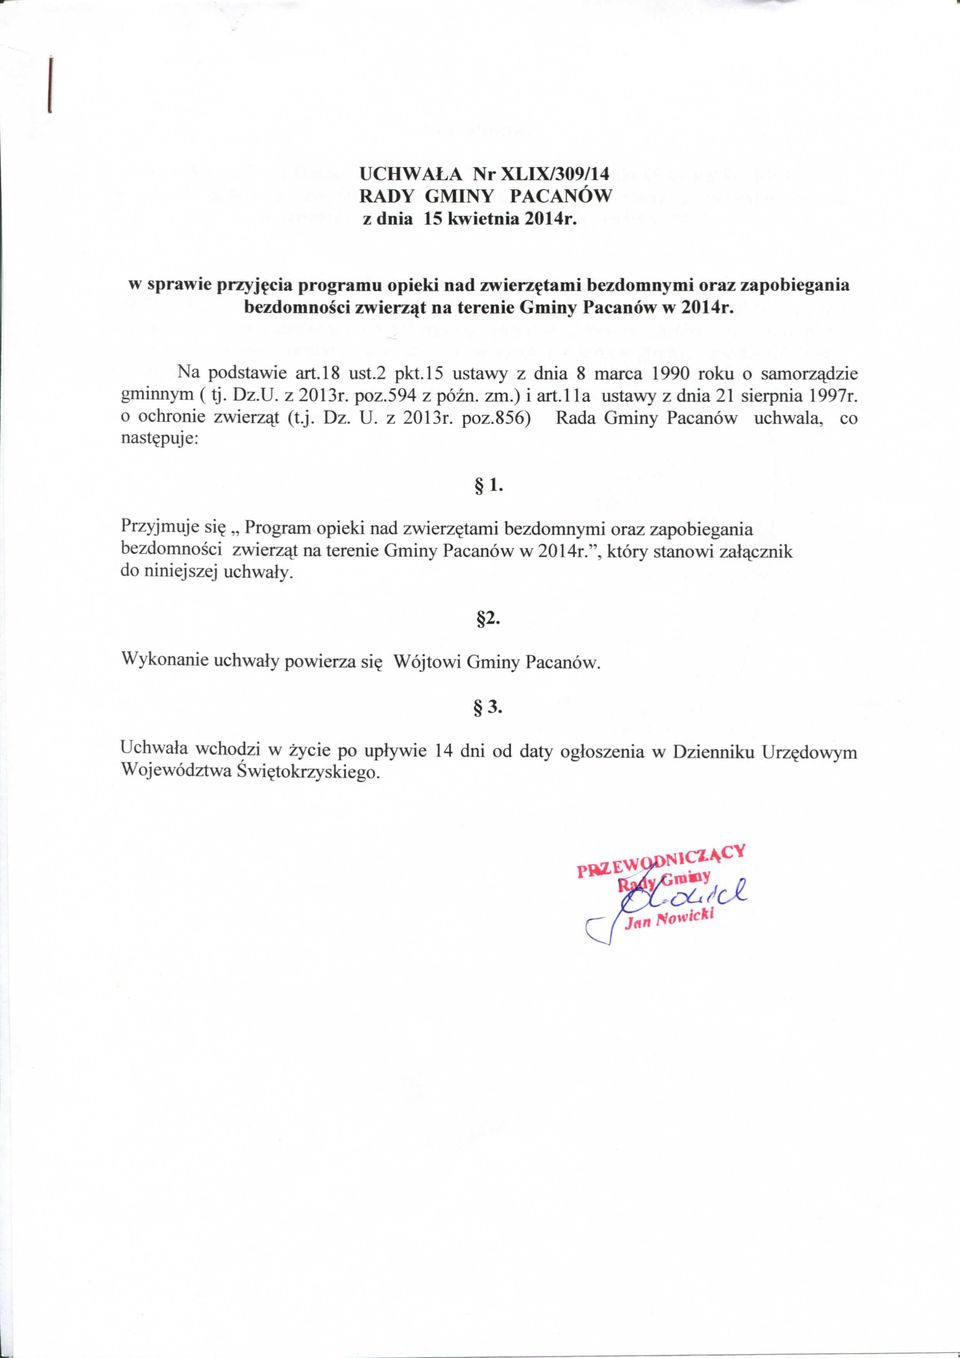 l5 ustawy z dnia 8 marca 1990 roku o samorz^dzie gminnym ( tj. Dz.U. z 2013r. poz.